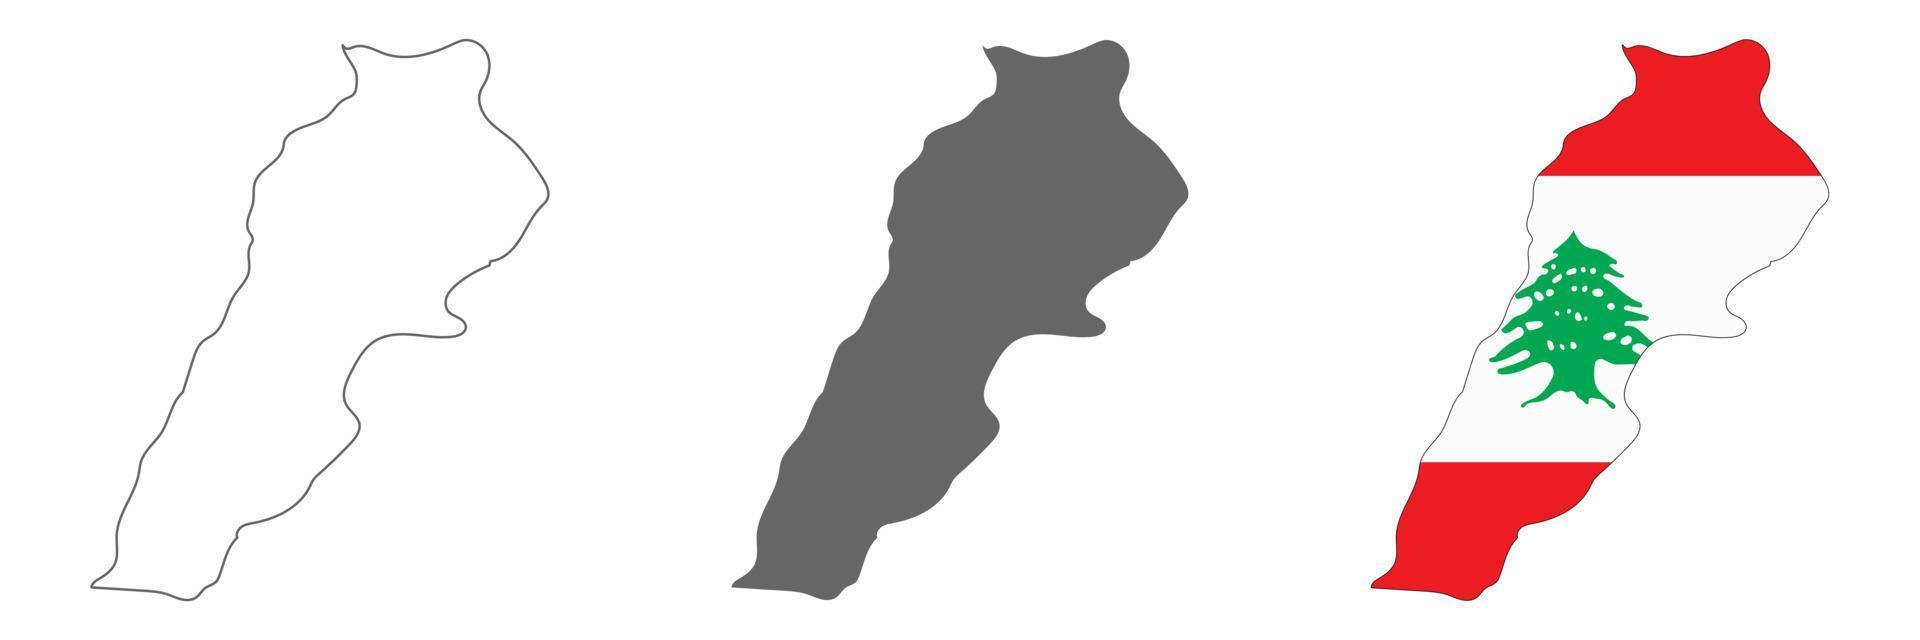 Mappa del Libano altamente dettagliata con bordi isolati su sfondo vettore